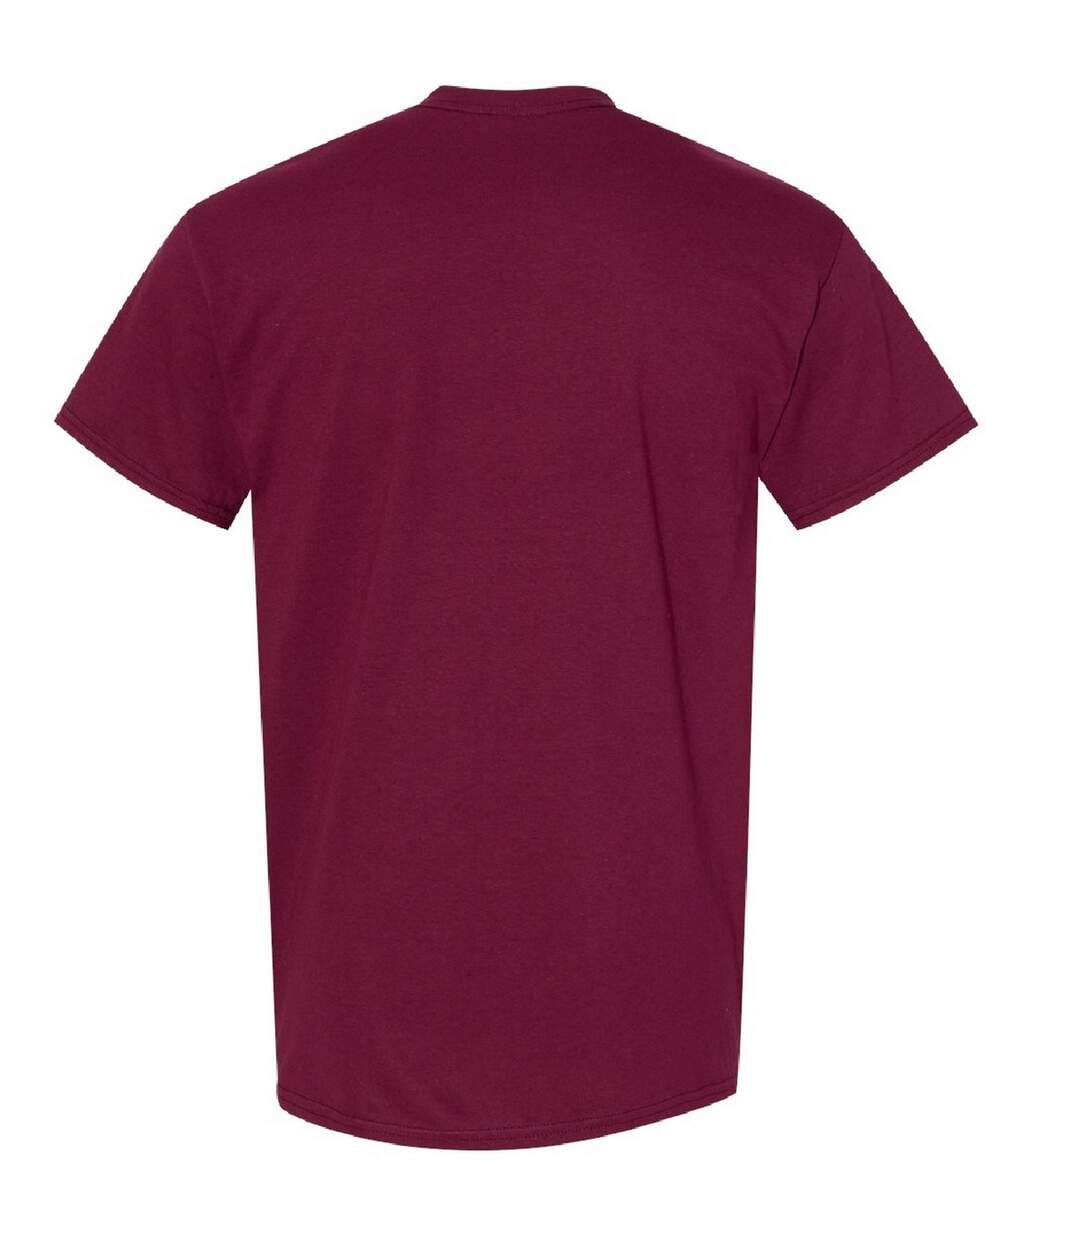 Gildan - T-shirt à manches courtes - Homme (Marron) - UTBC481